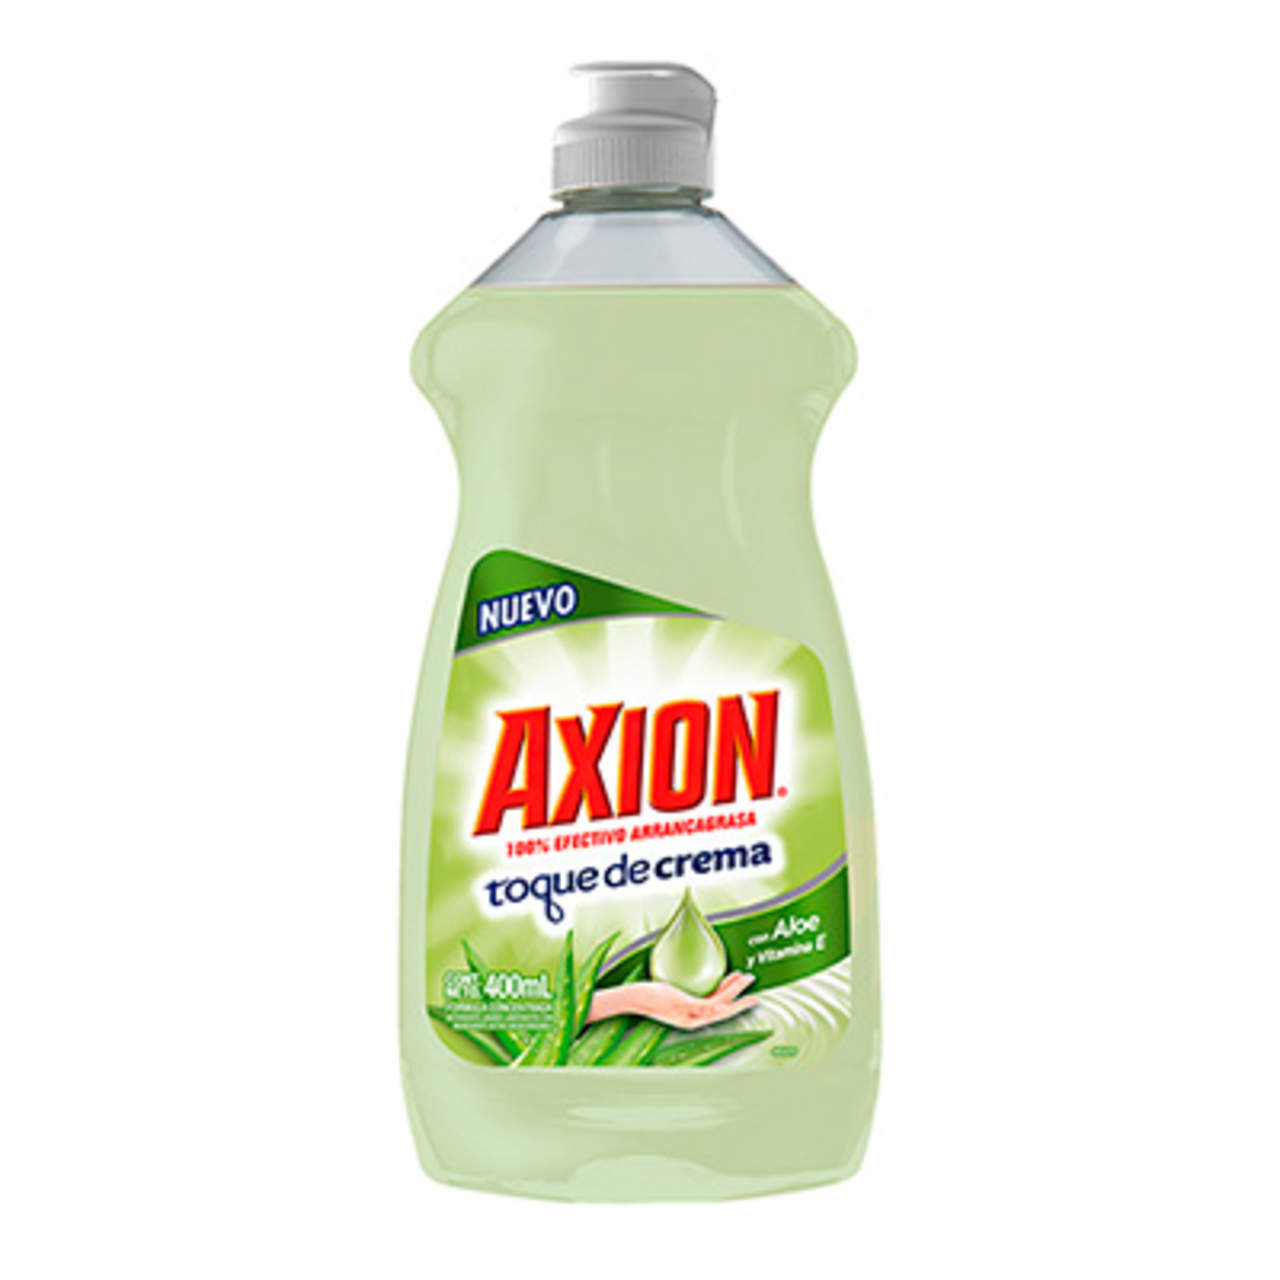 Se trata del producto “Axión toque de crema con aloe vera y vitamina E”. (ESPECIAL)